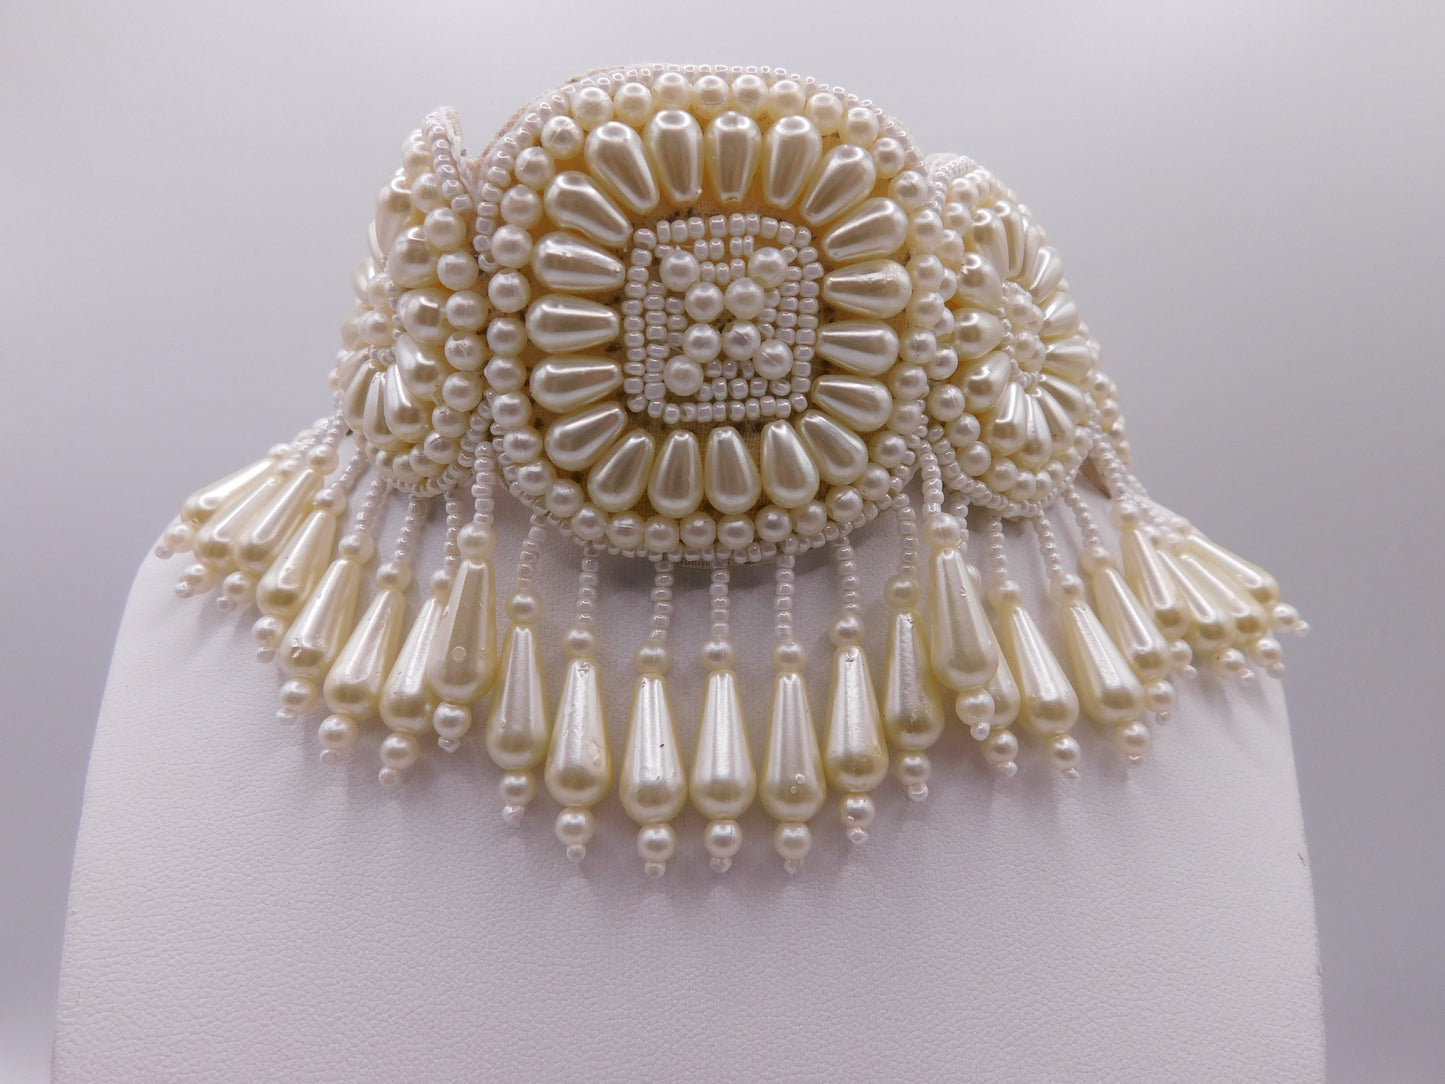 Ishani necklace set (Bestseller)